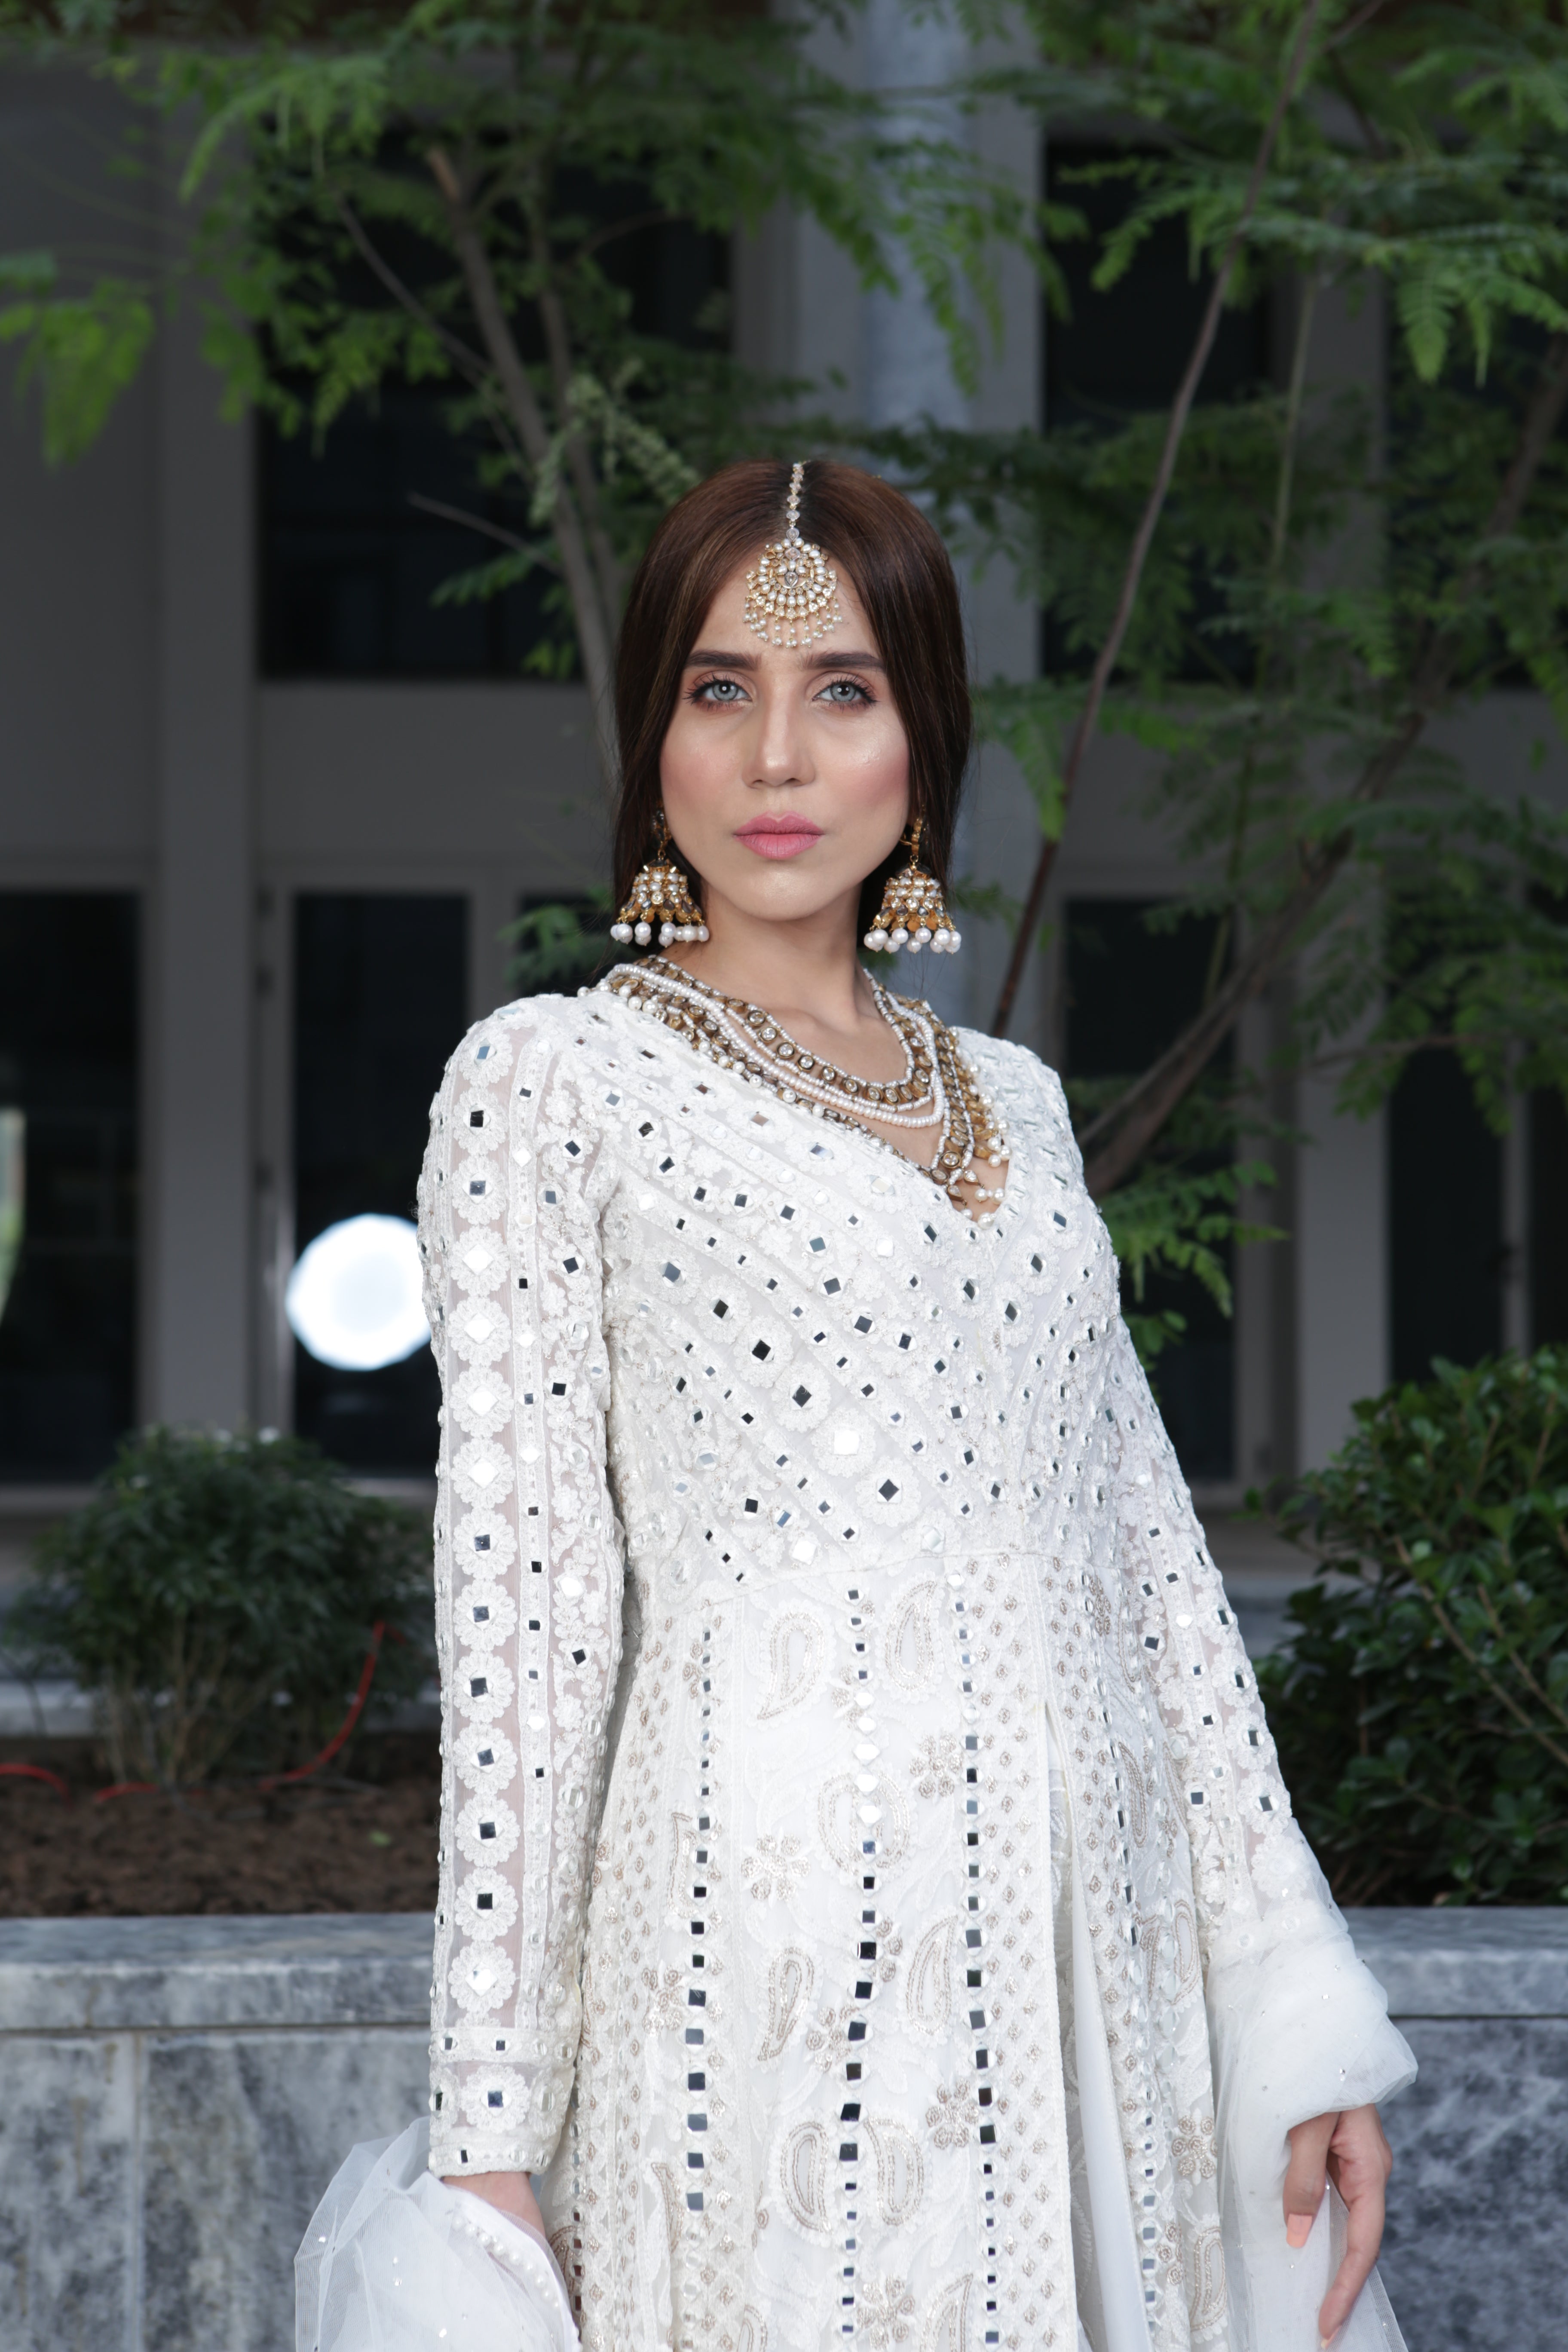 White Sheesh Mahal chikankari dress for Nikkah and Dua e khair